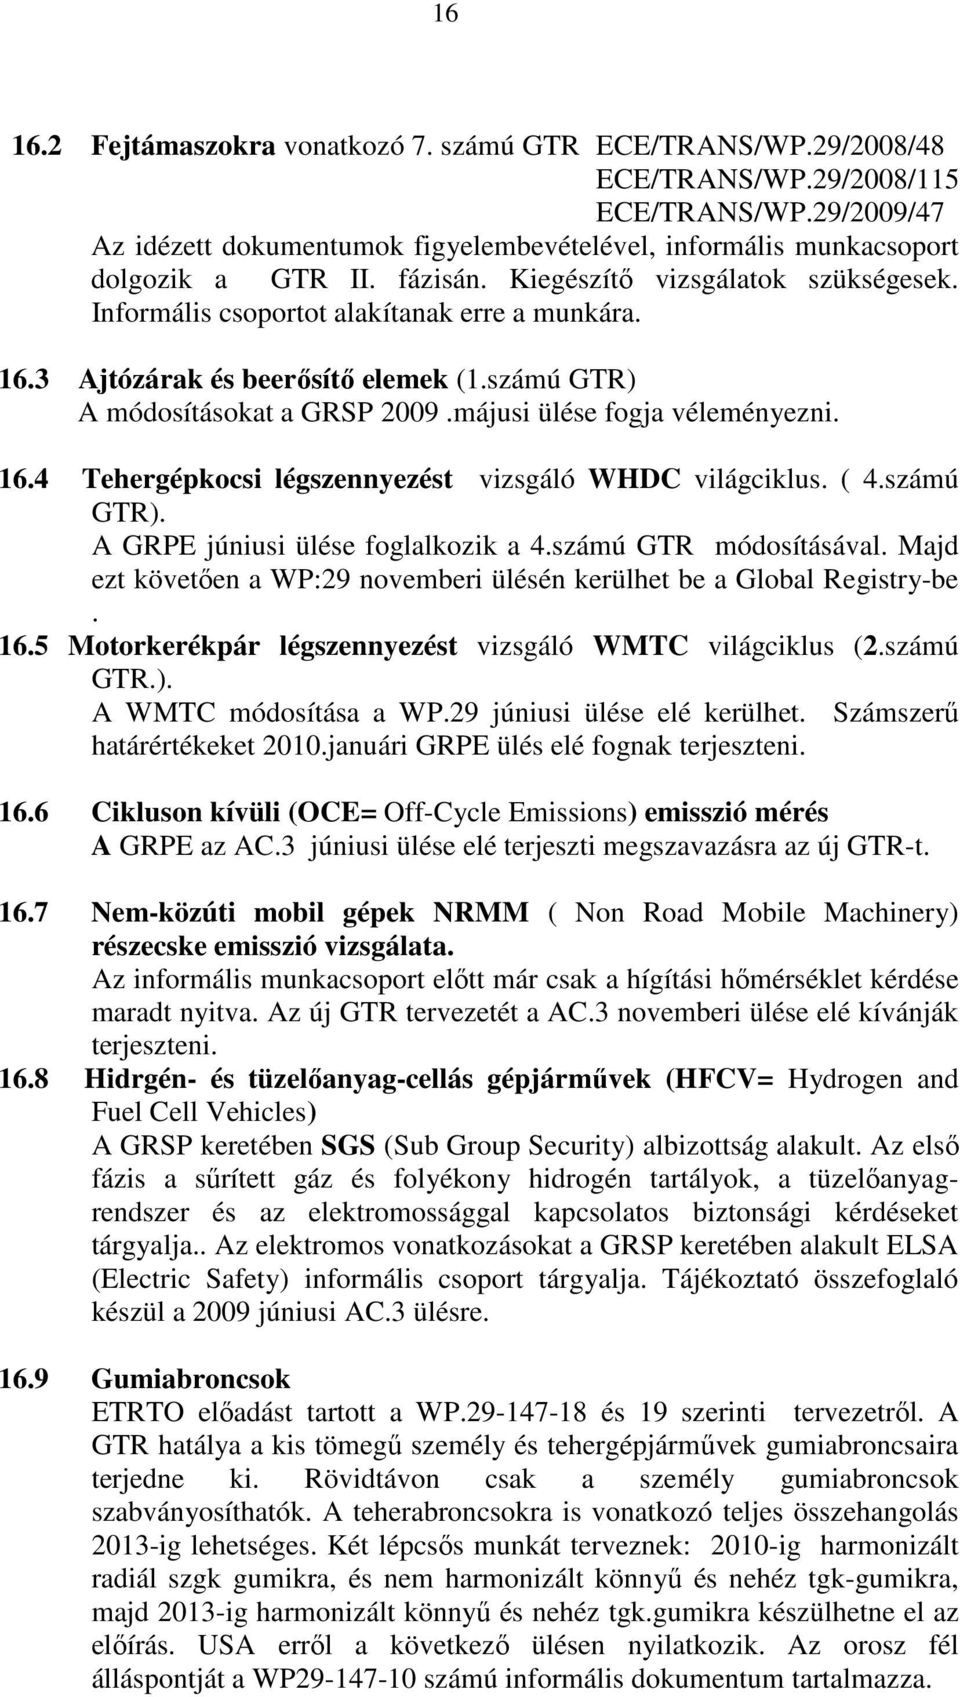 3 Ajtózárak és beerısítı elemek (1.számú GTR) A módosításokat a GRSP 2009.májusi ülése fogja véleményezni. 16.4 Tehergépkocsi légszennyezést vizsgáló WHDC világciklus. ( 4.számú GTR). A GRPE júniusi ülése foglalkozik a 4.